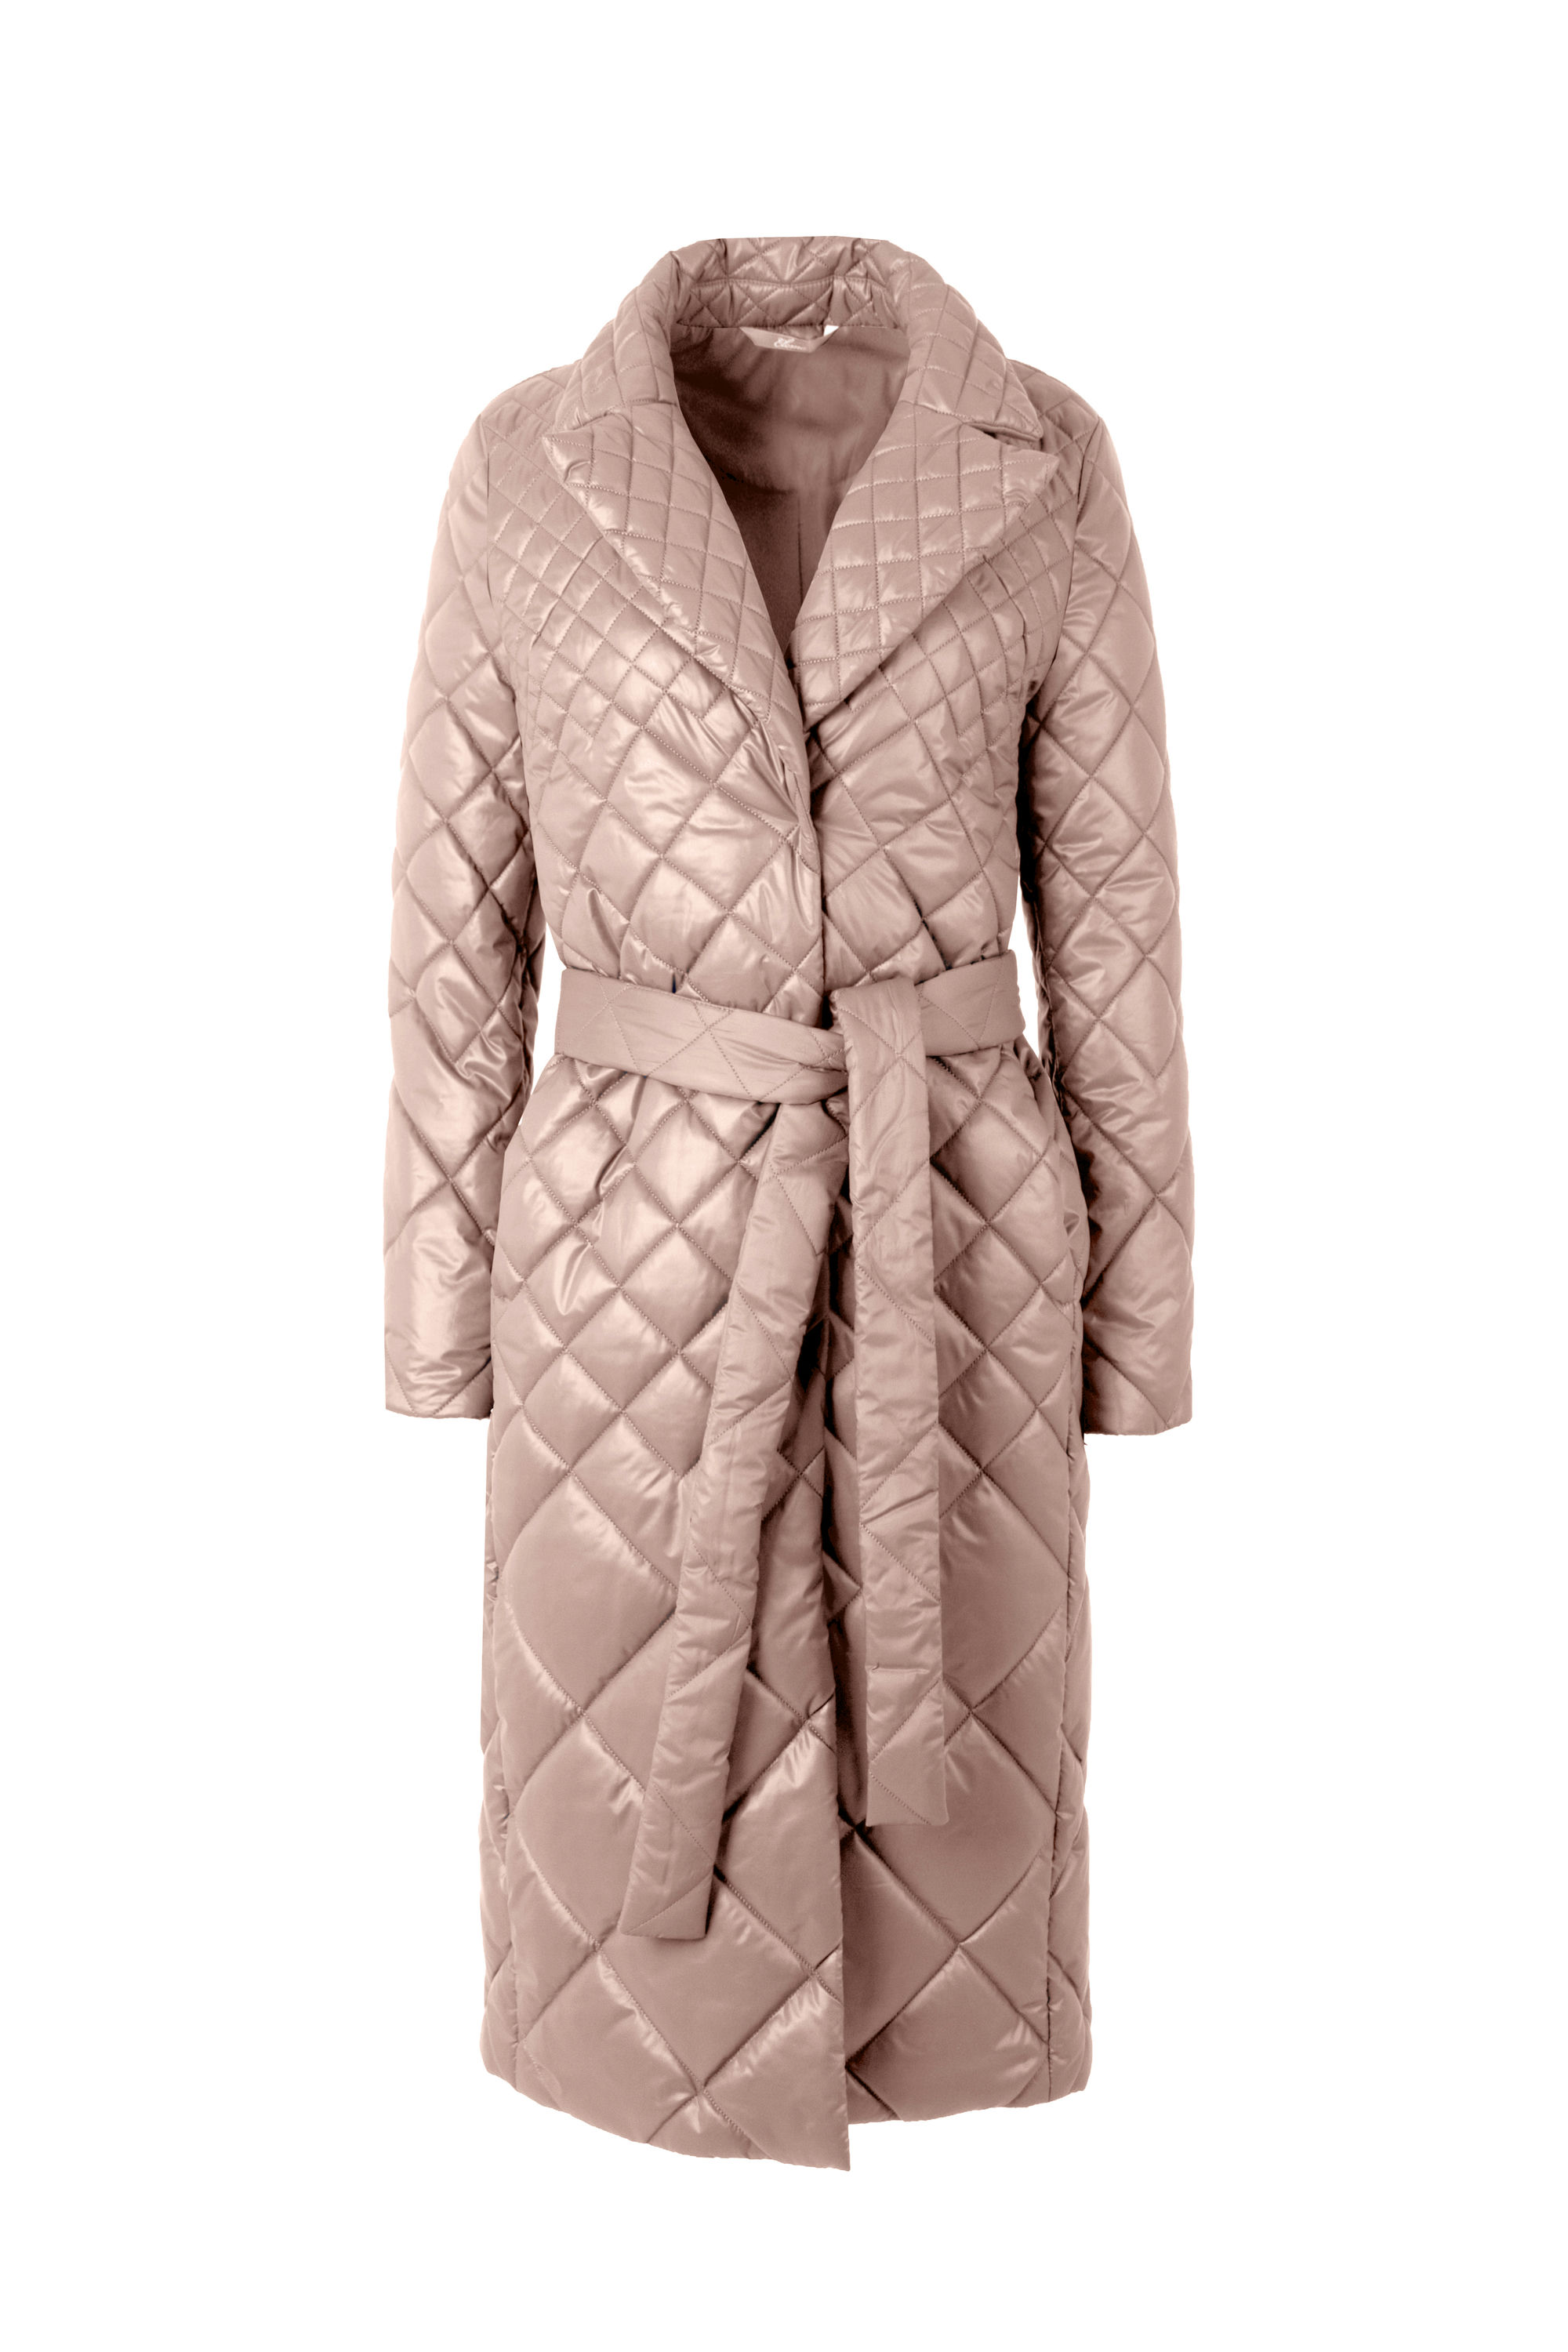 Пальто женское плащевое утепленное 5-12535-1. Фото 5.